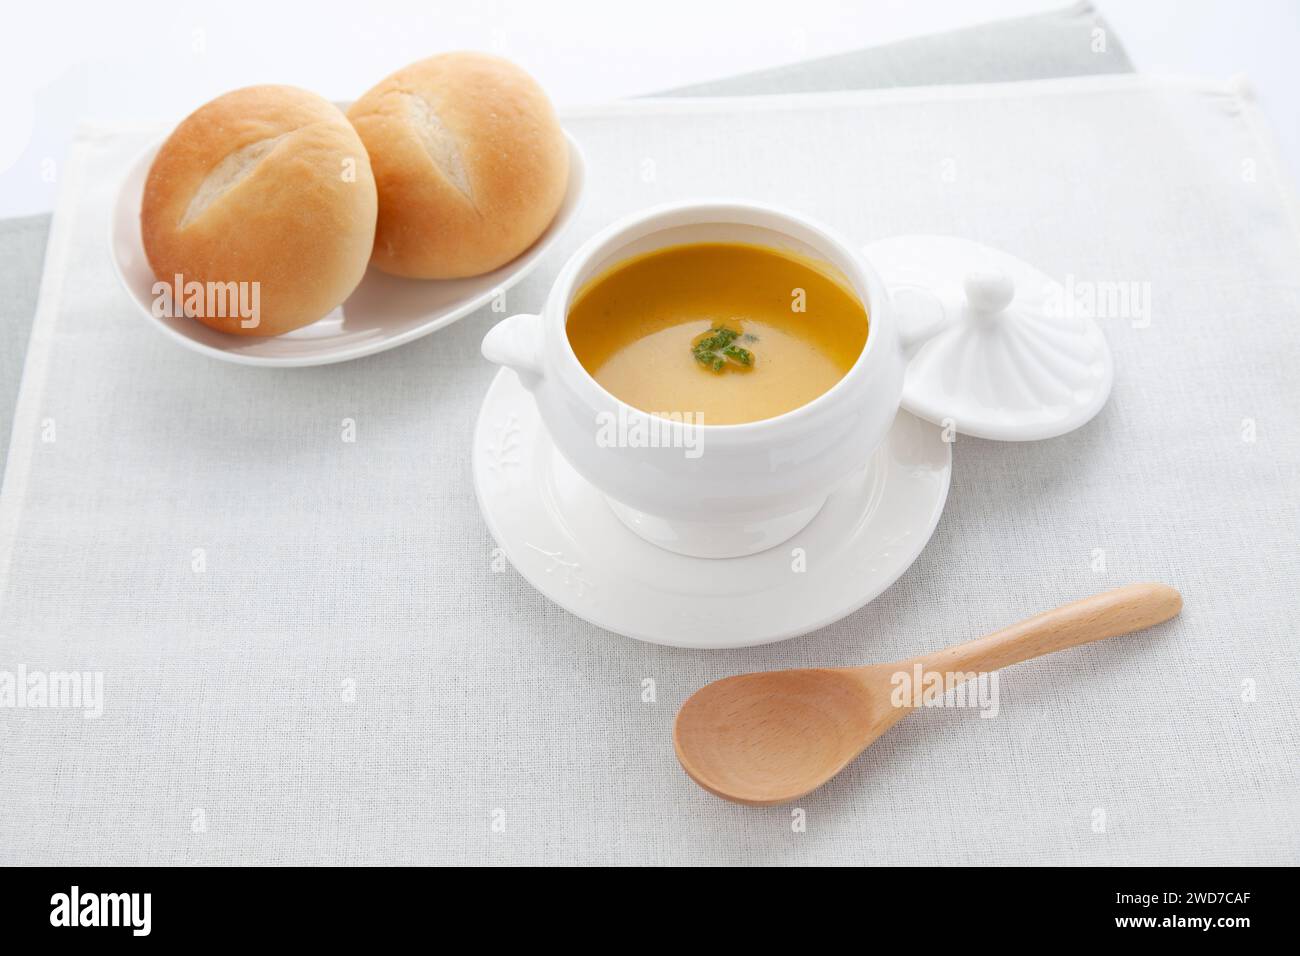 soupe potage de citrouille isolée sur la table Banque D'Images